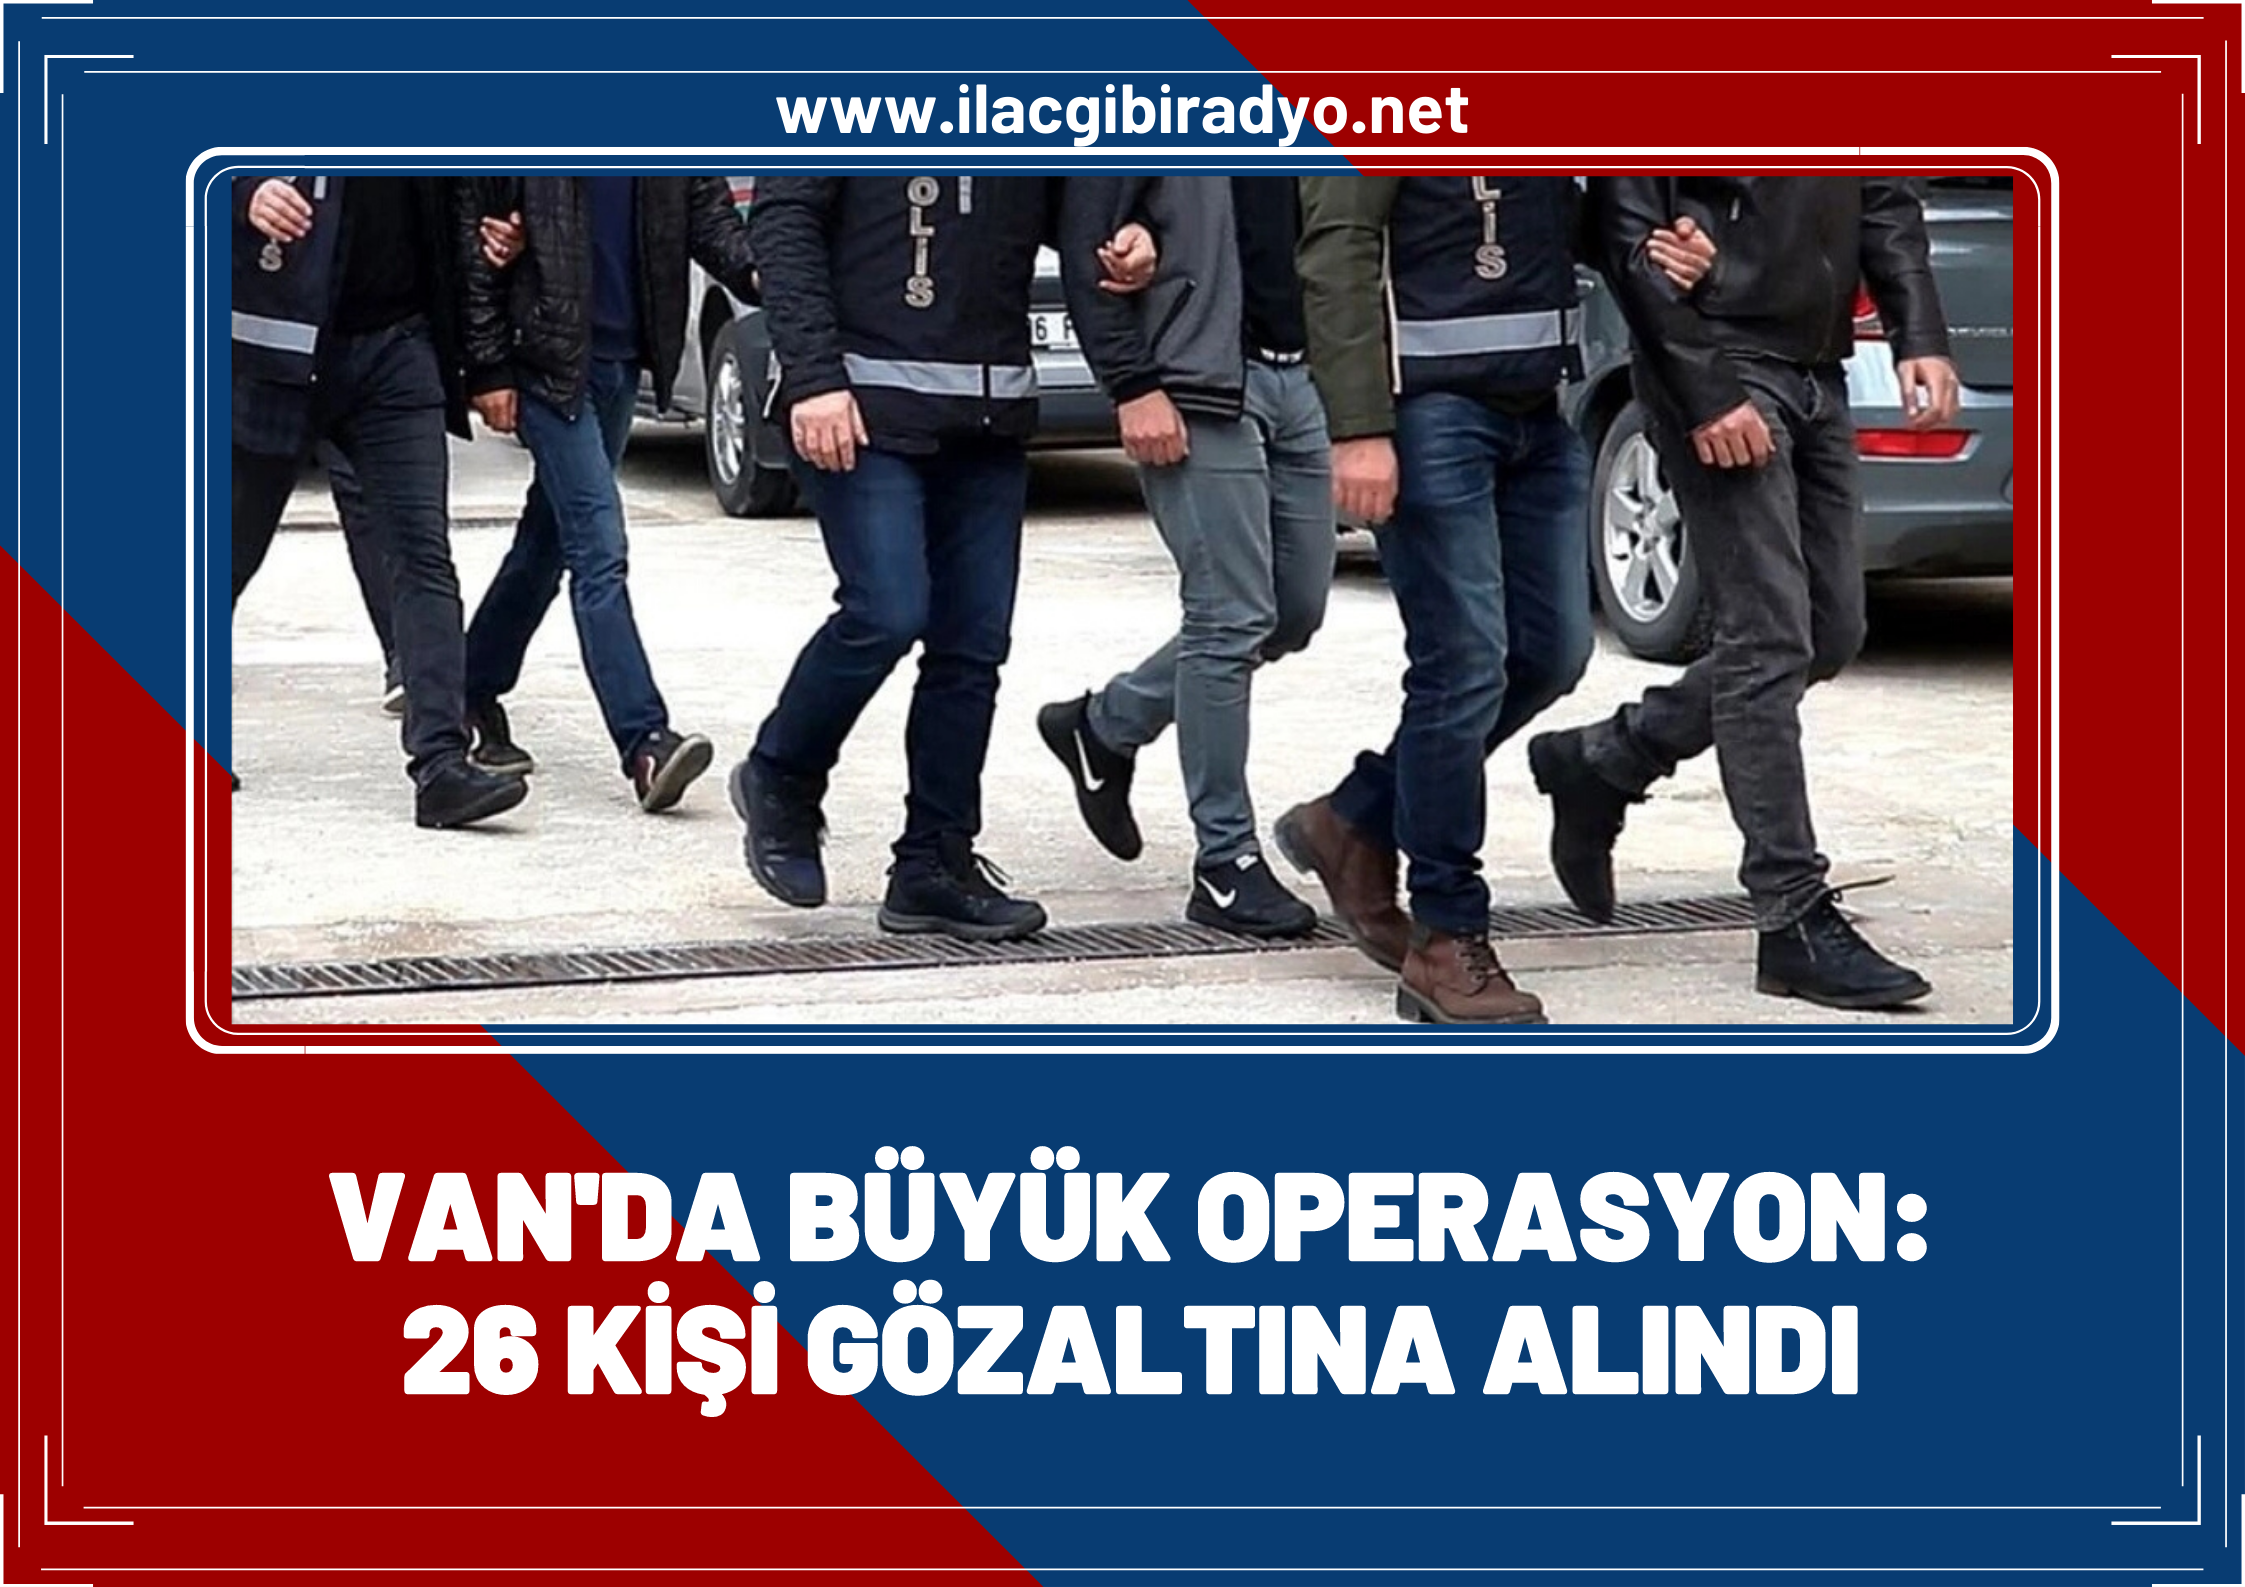 Van’da büyük operasyon: 26 kişi gözaltına alındı!